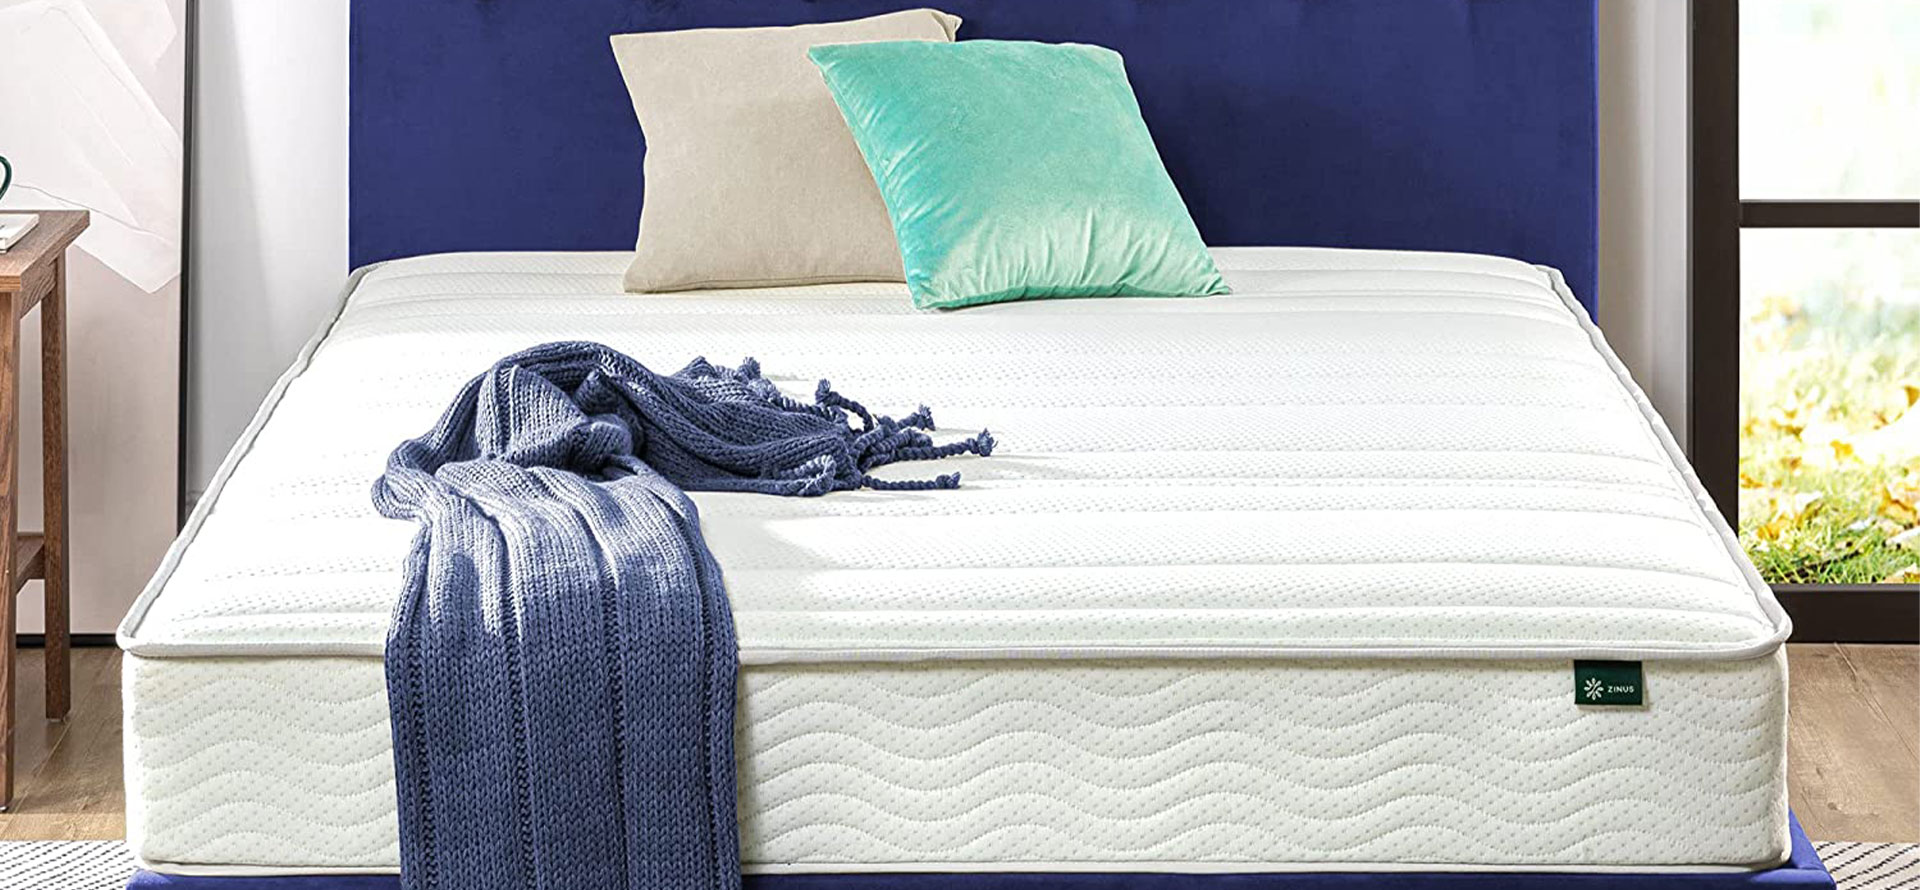 Zinus mattress and pillows.